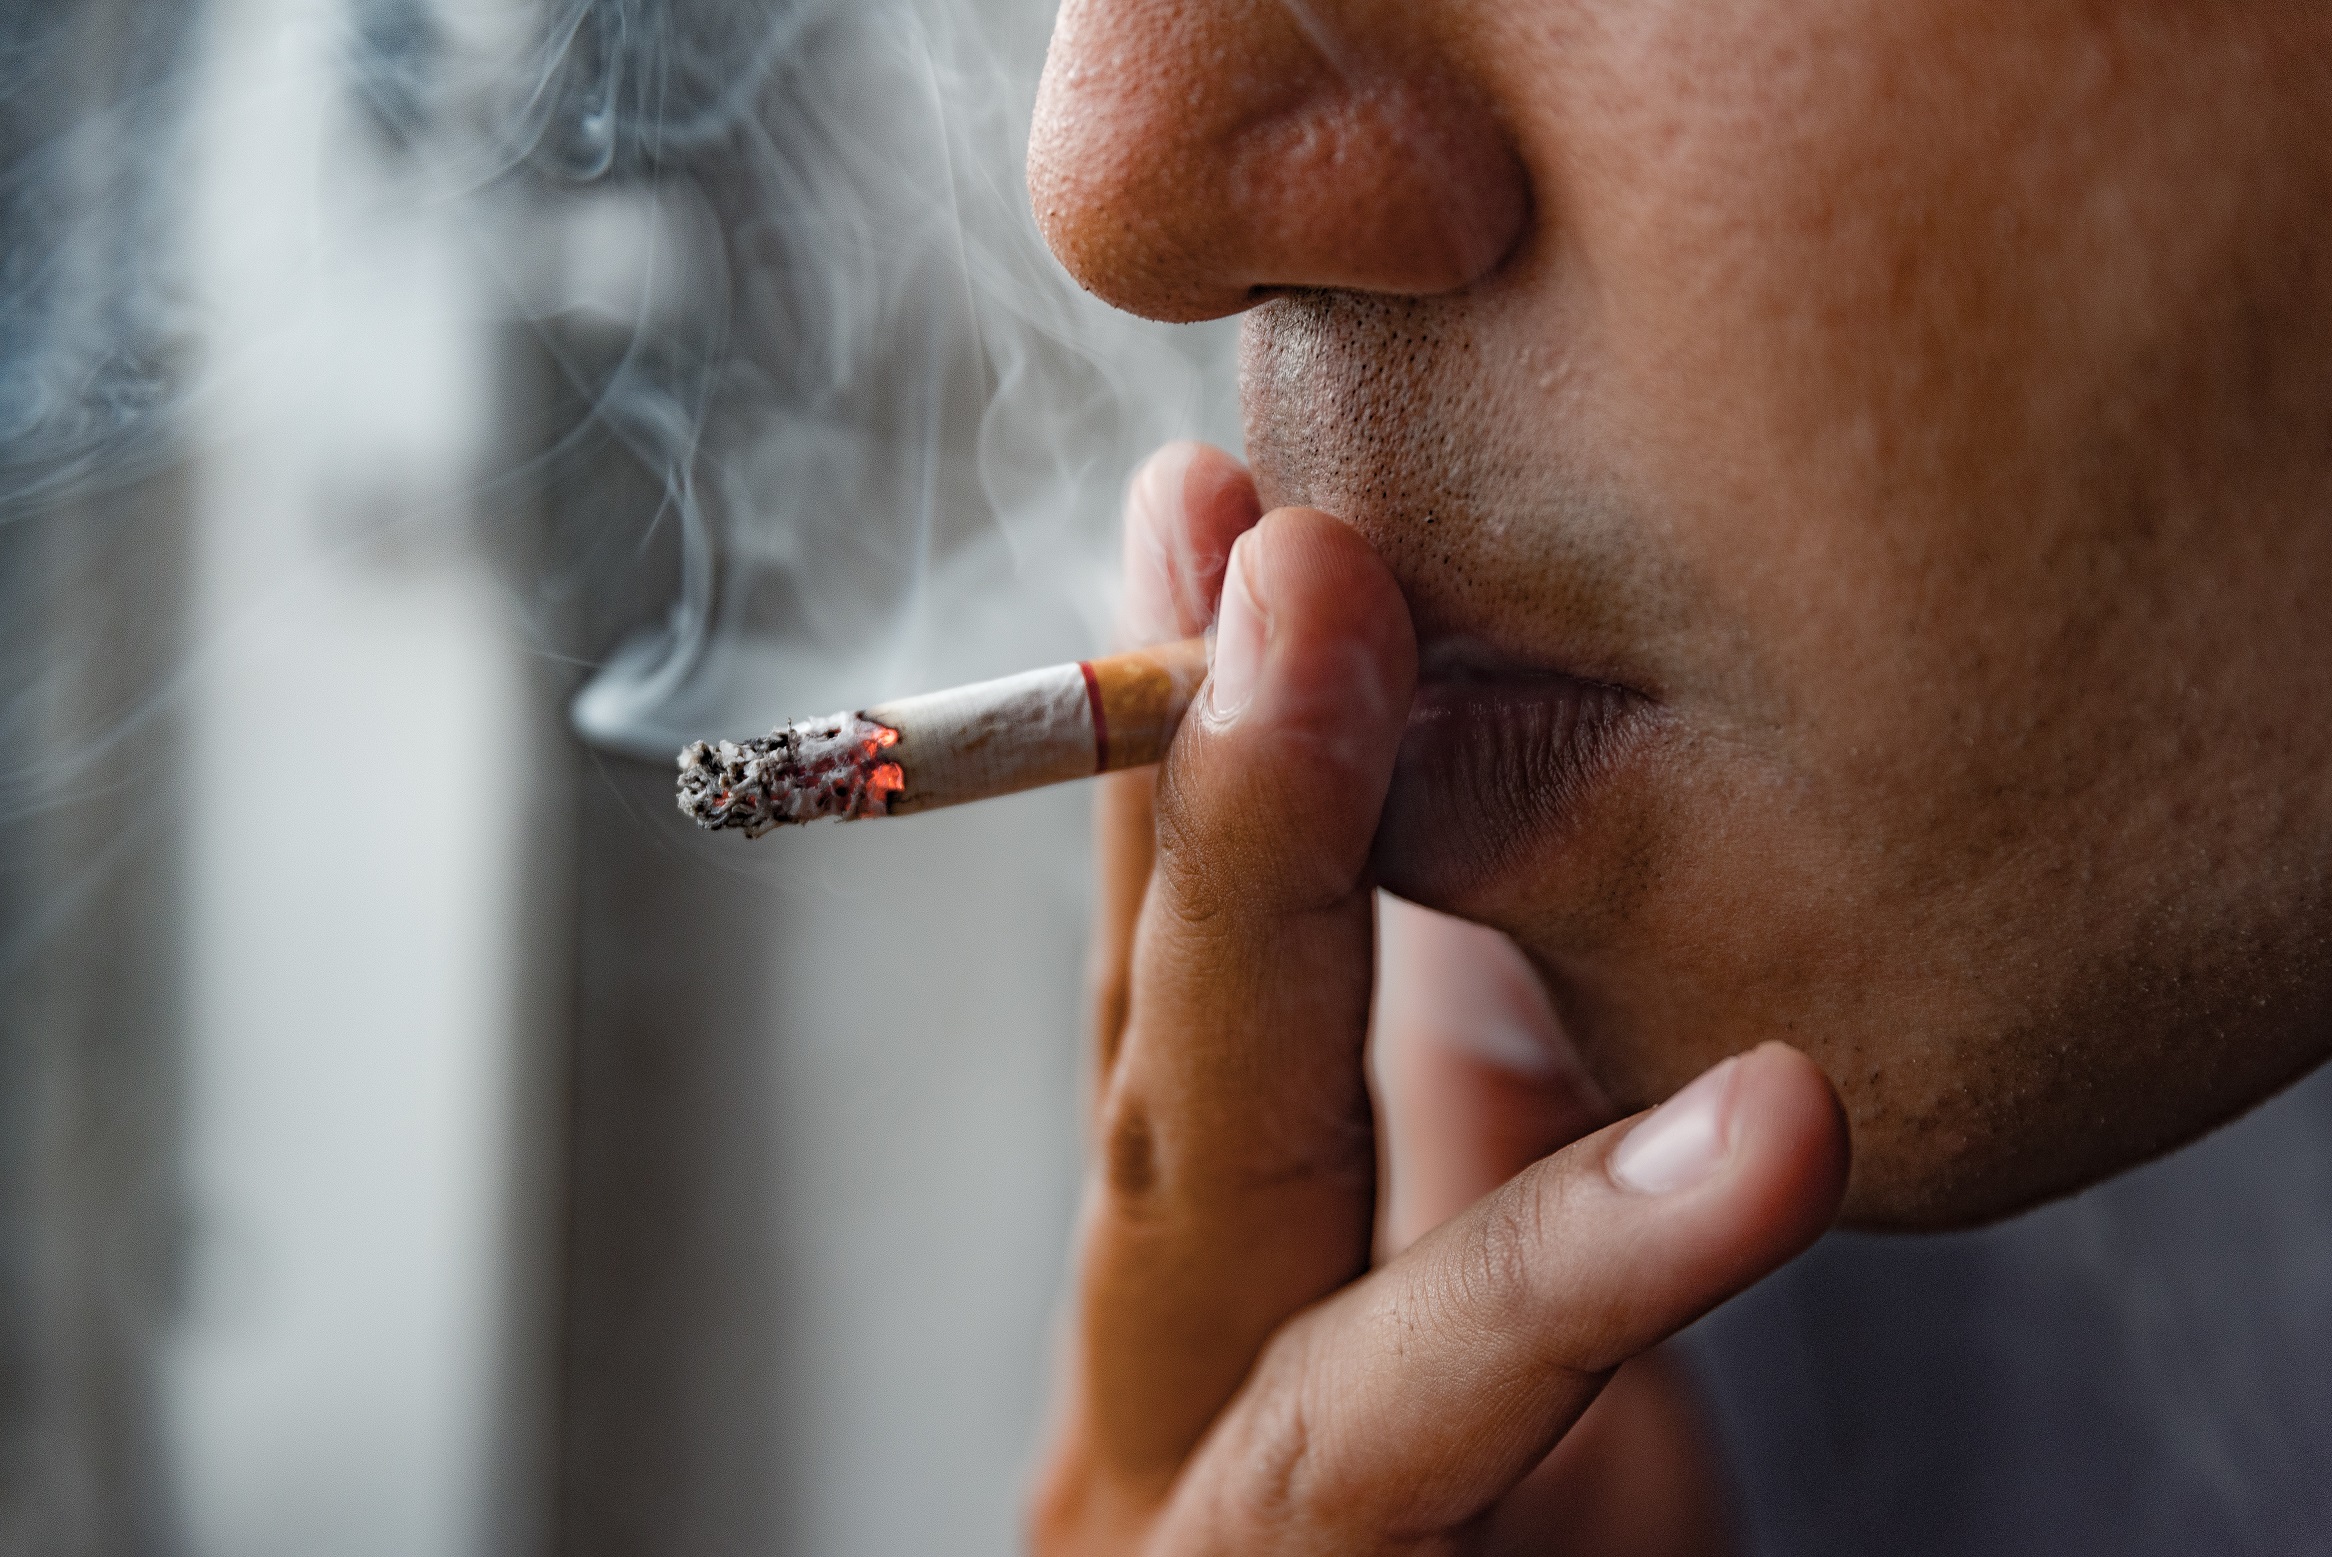 Il fumo aumenta significativamente il rischio di fratture e osteoporosi – una pratica curativa